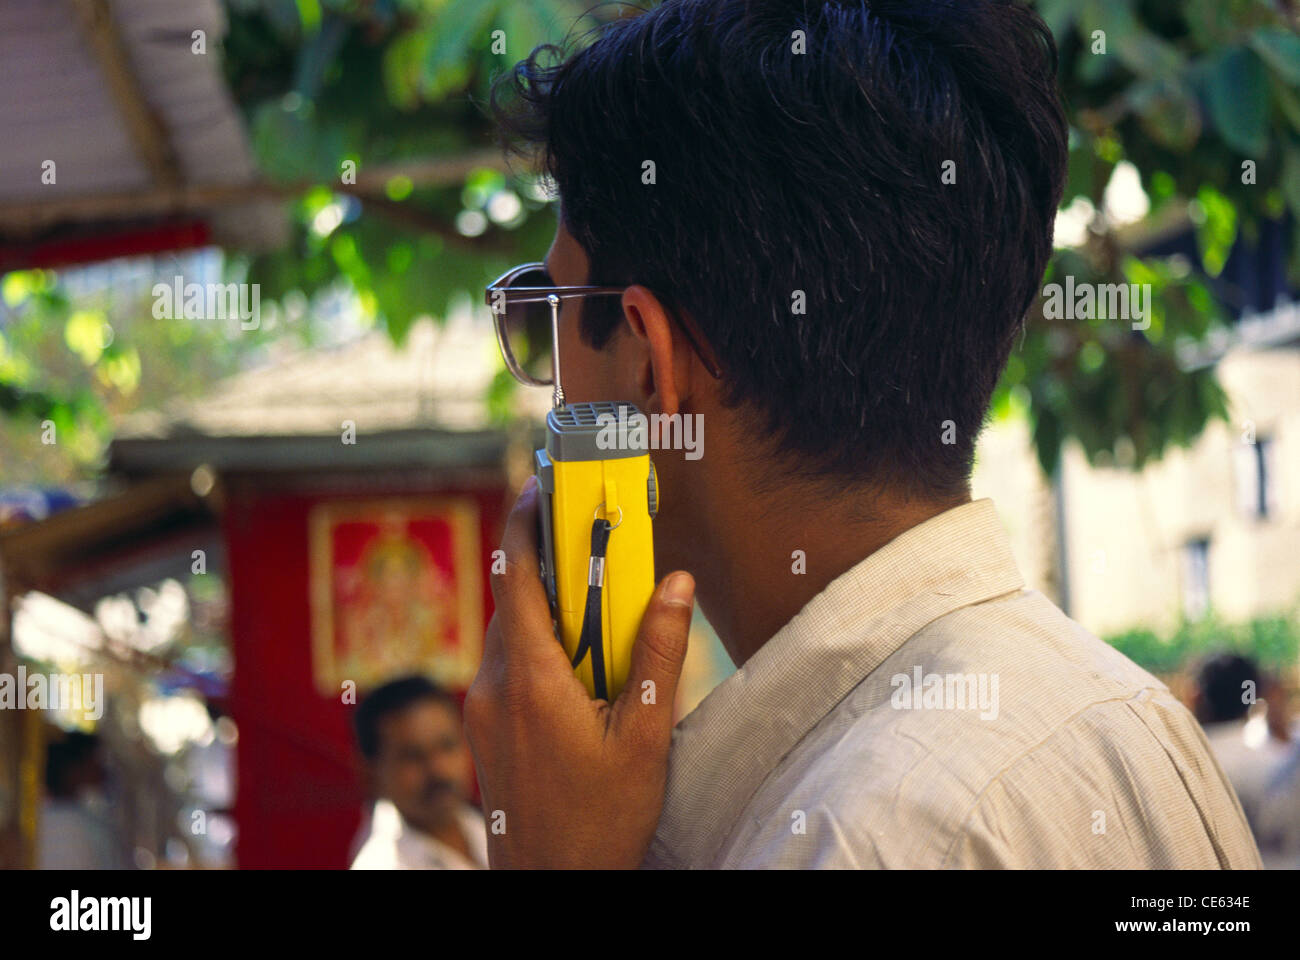 Fruta vegetales como resultado Encantador Man listening to cricket commentary on radio ; India Stock Photo - Alamy